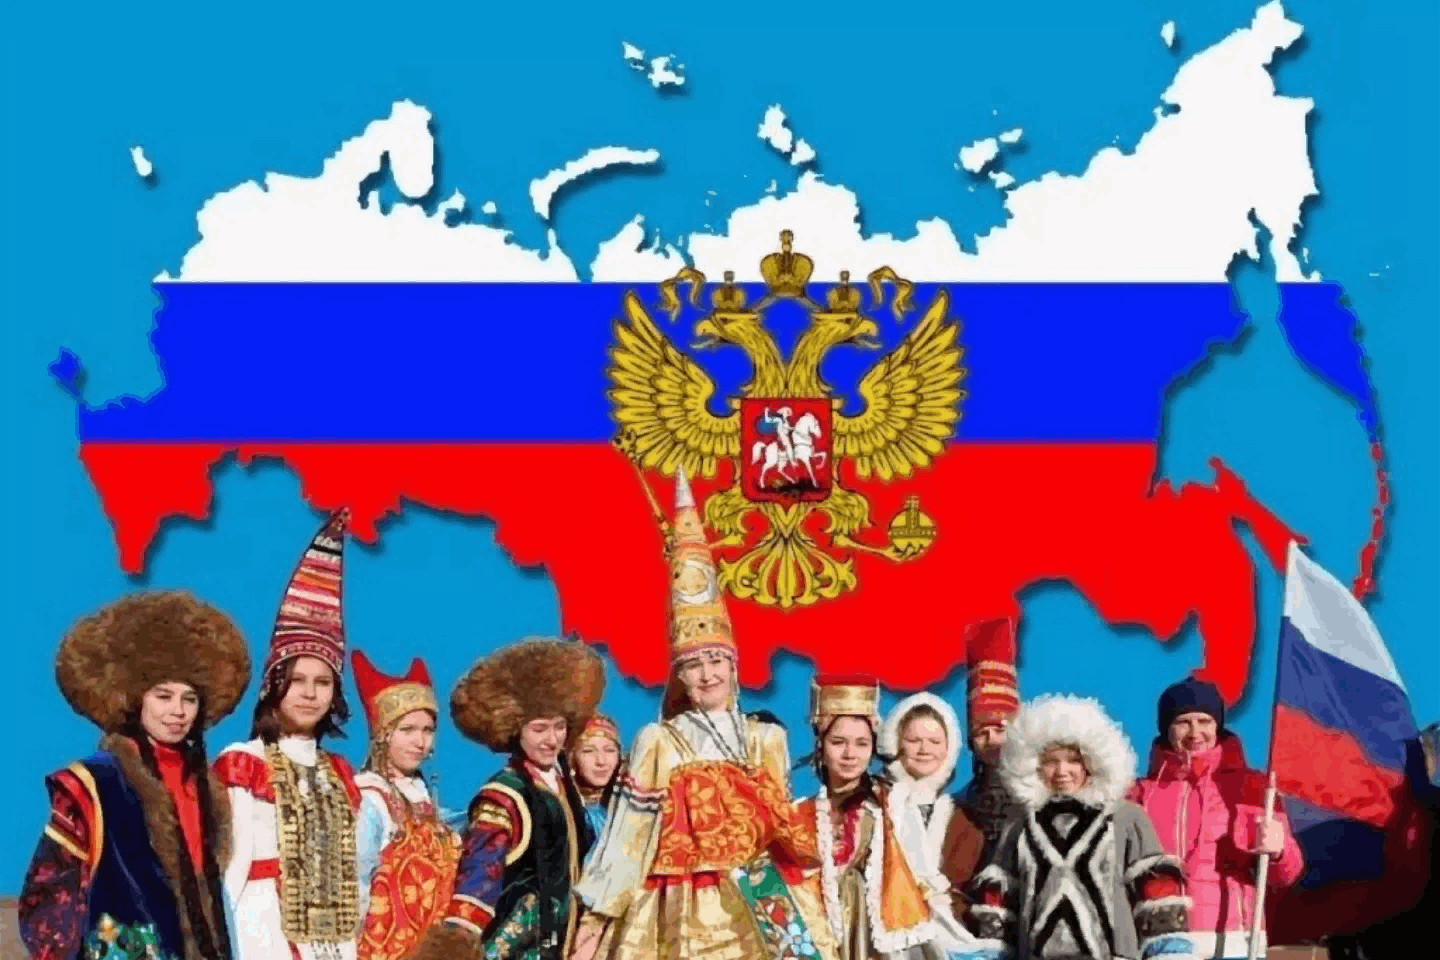 Год русской нации